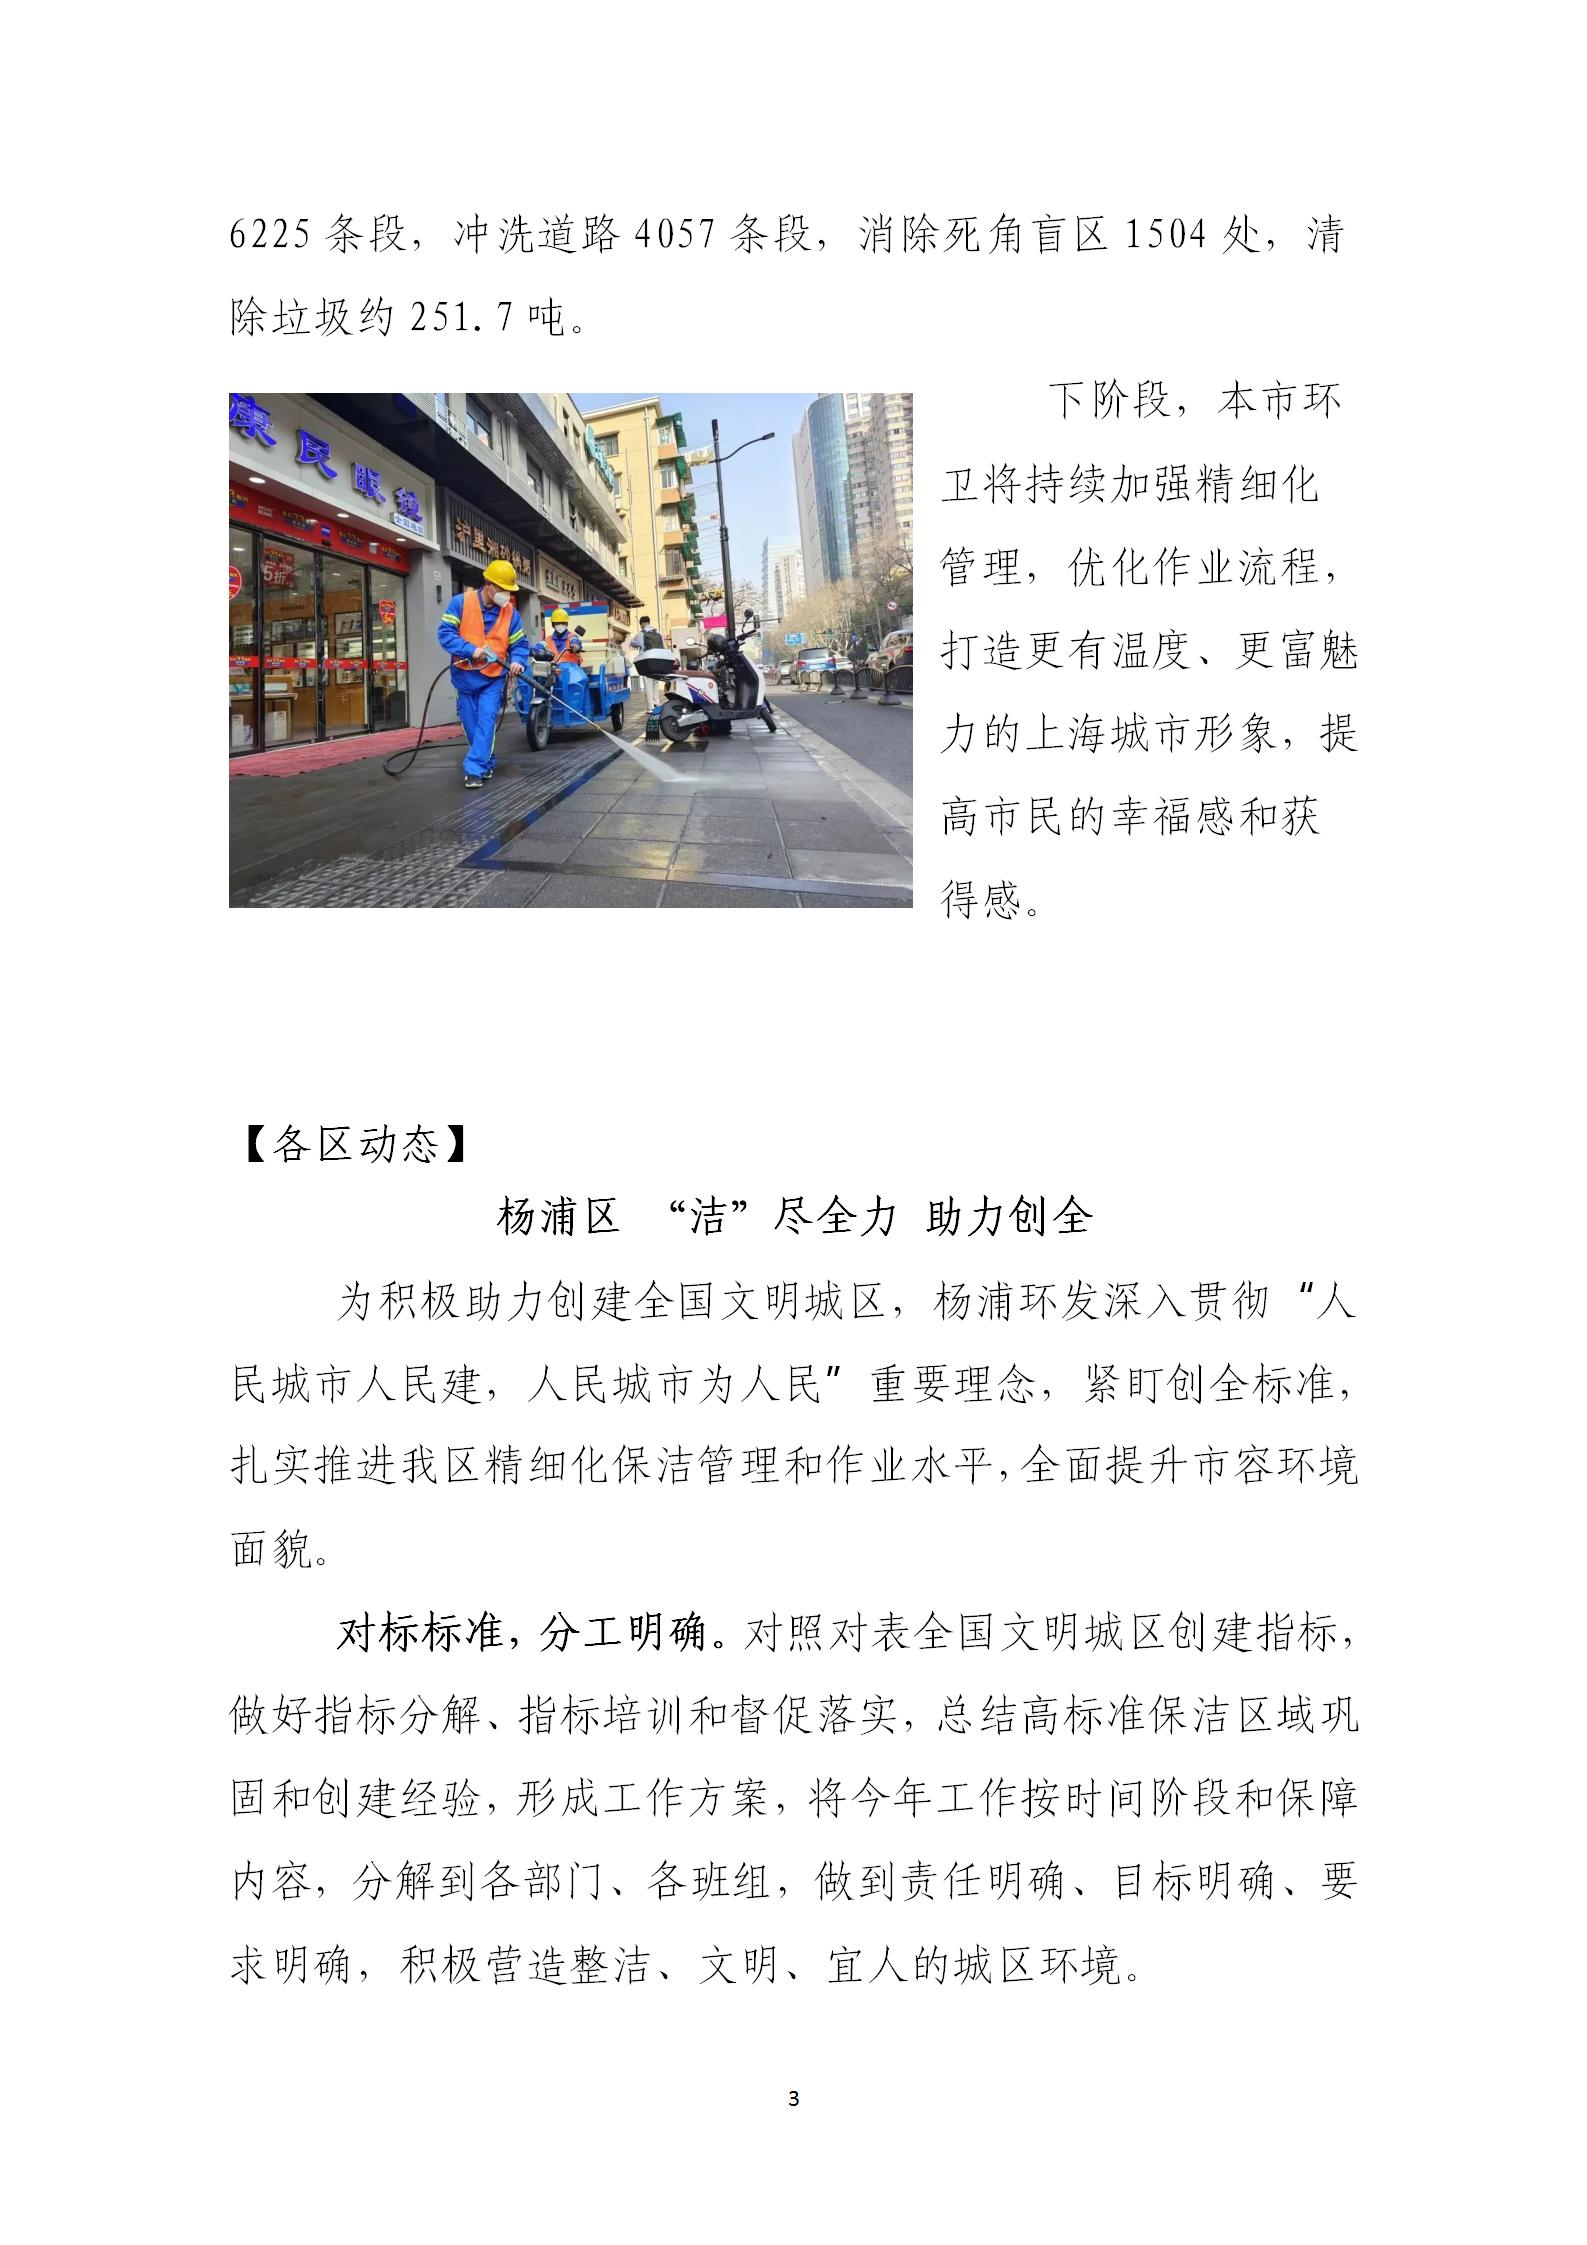 上海市道路保洁与垃圾清运工作月刊  2023年第3期(8)_03.jpg